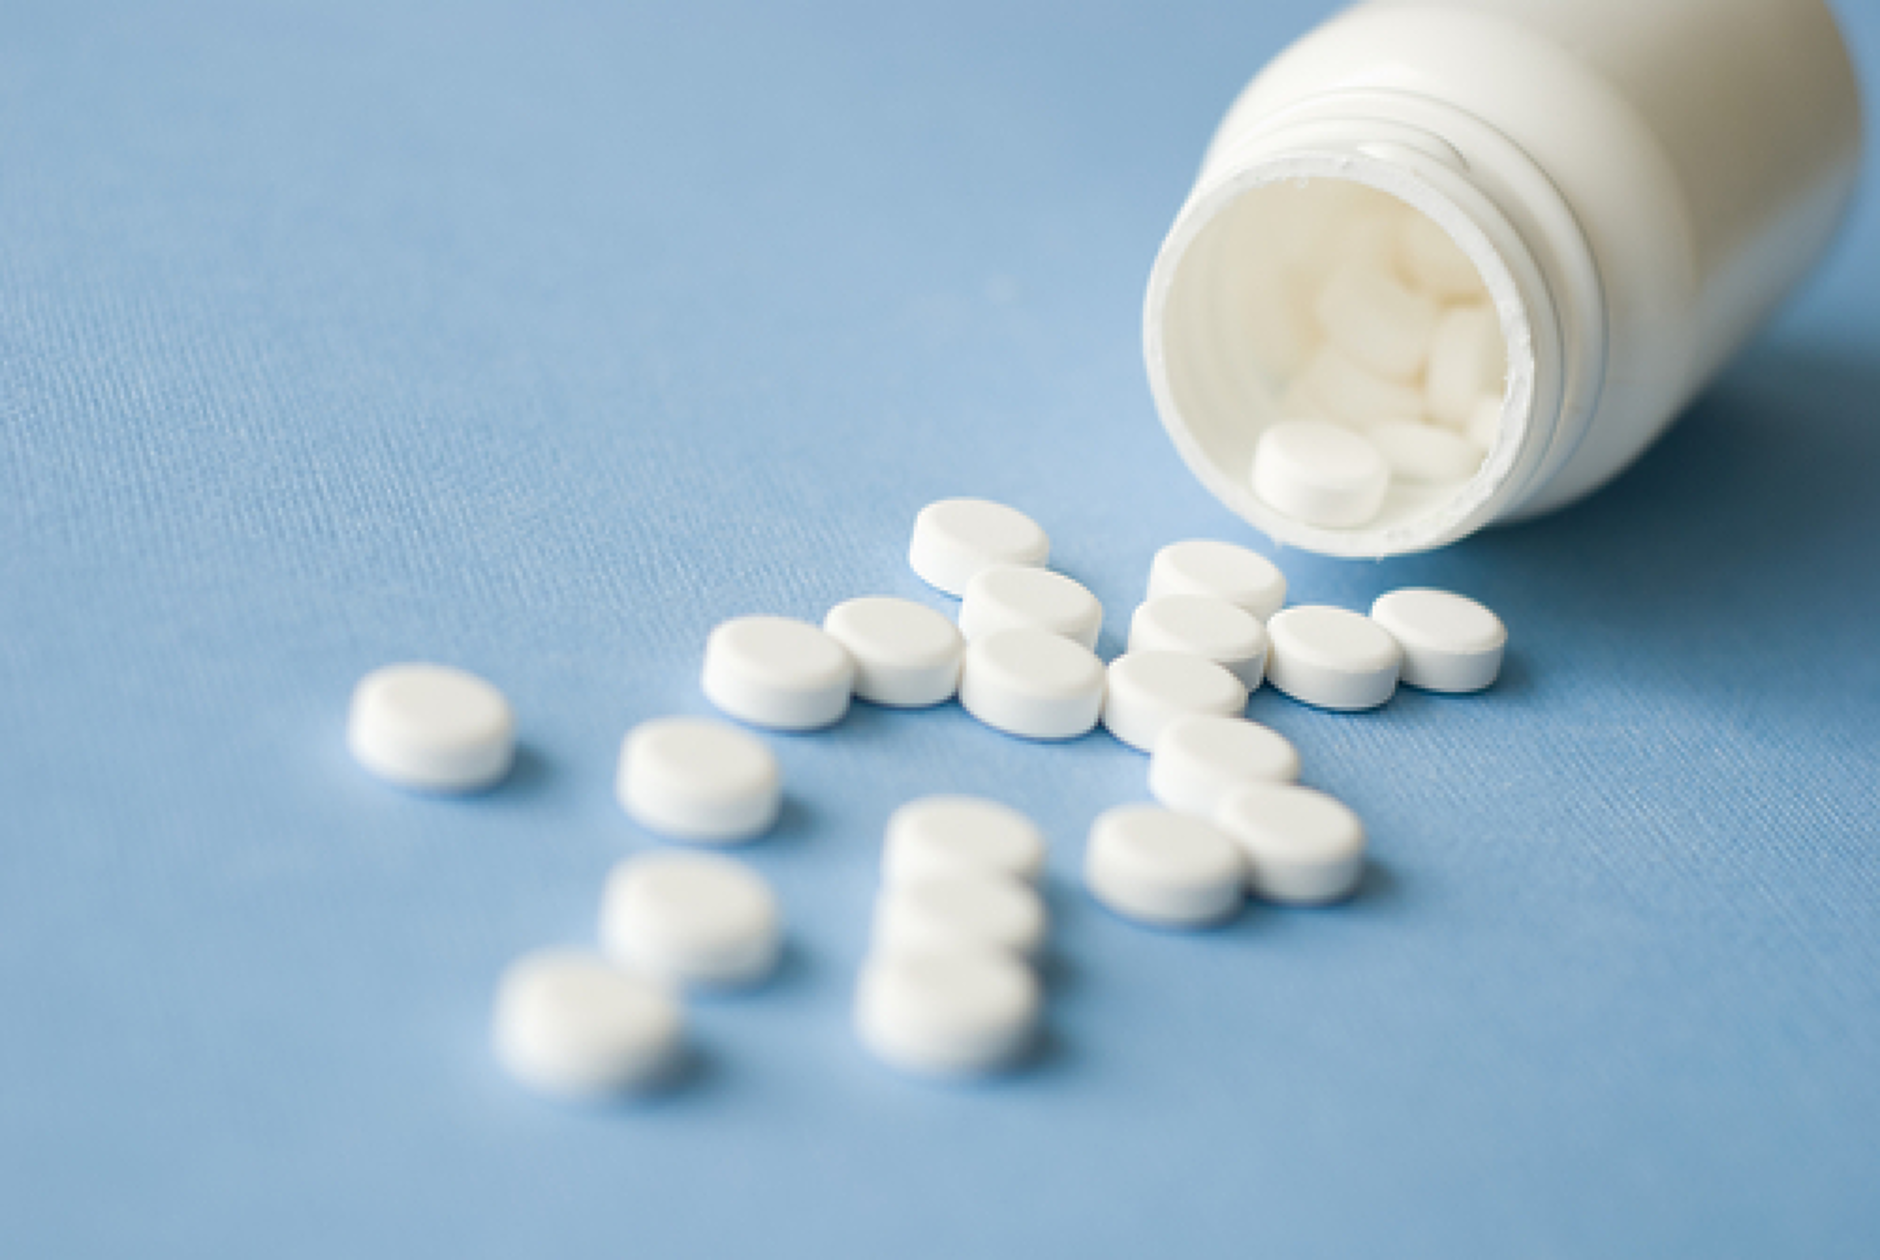 СЗО издаде предупреждения за разпространяване на фалшиви лекарства за отслабване